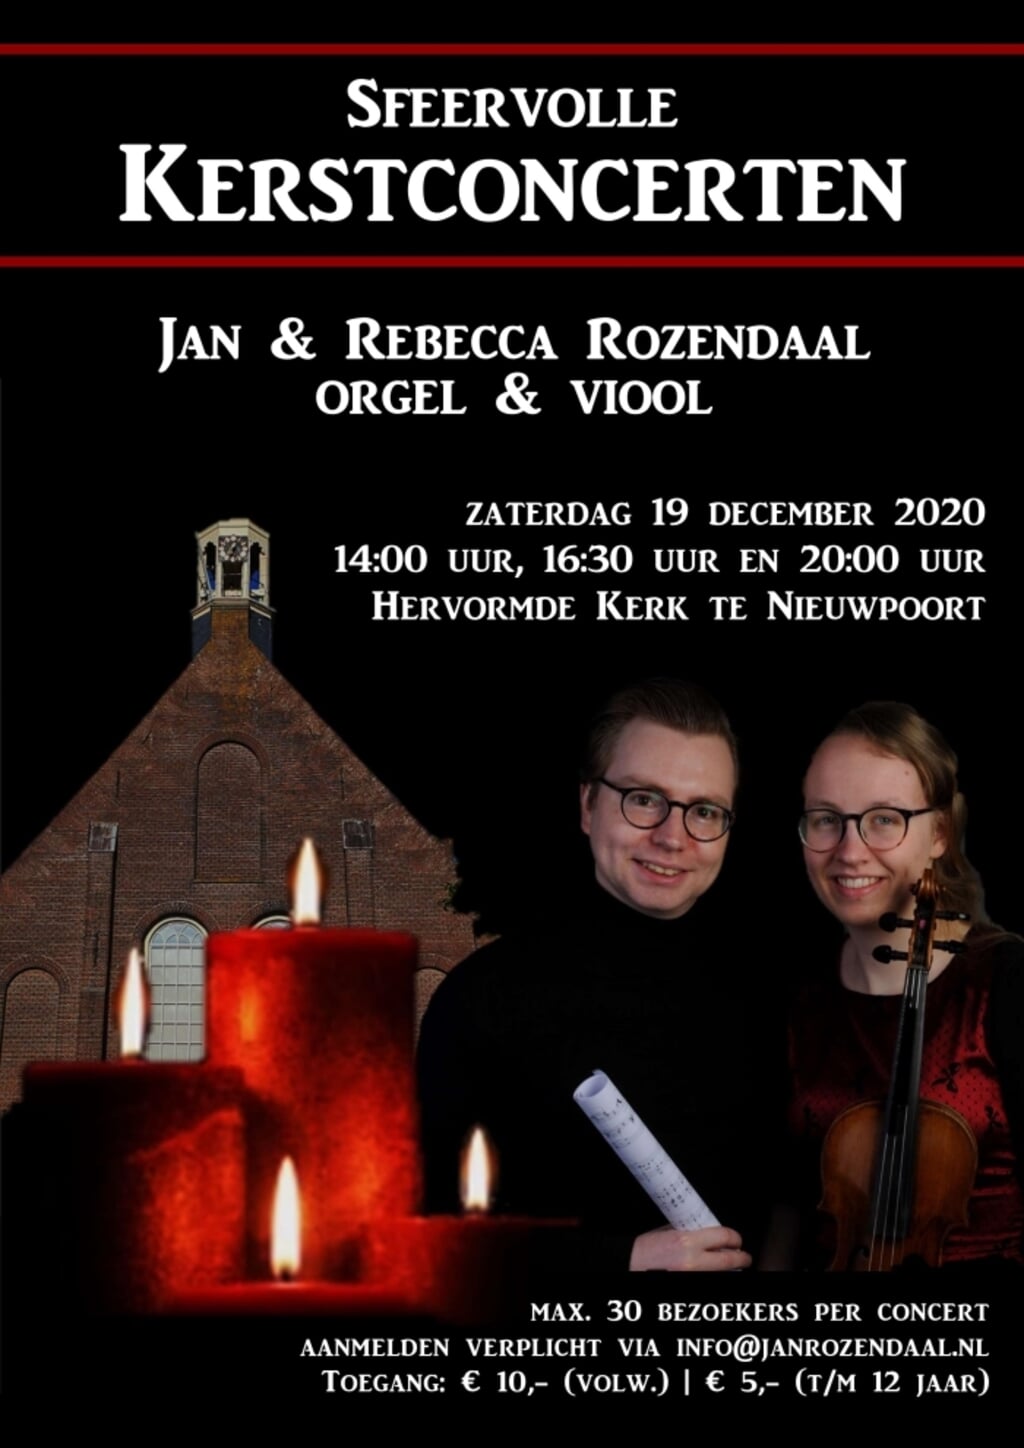 • Jan Rozendaal op orgel en Rebecca Rozendaal op viool verzorgen op zaterdag 19 december drie Kerstconcerten in de Hervormde kerk van Nieuwpoort. 